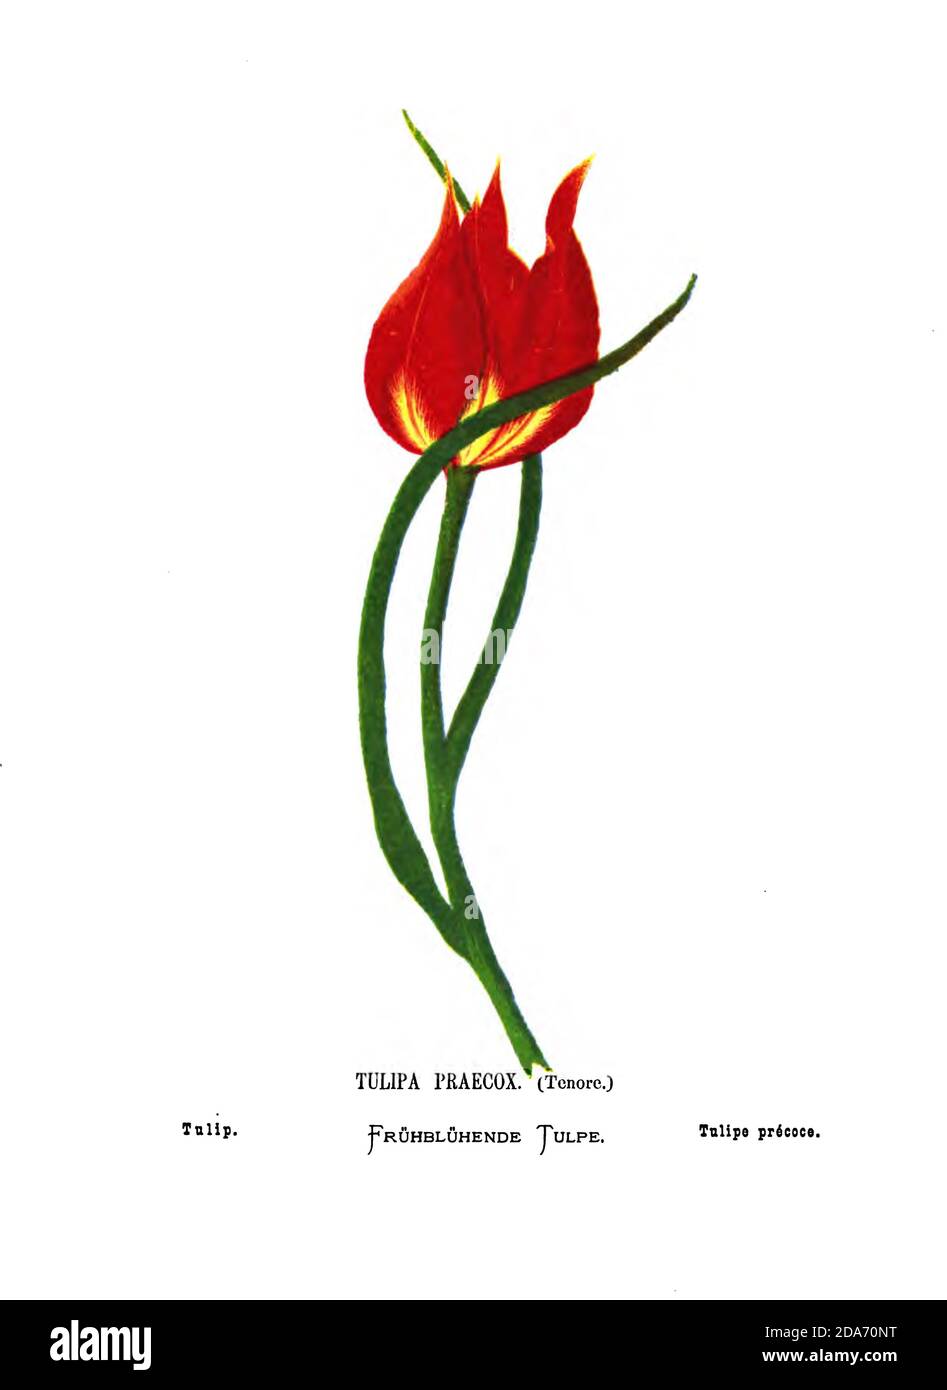 Tulipe, Tulipa praecox [probablement Tulipa agenensis] du livre fleurs sauvages de la Terre Sainte: Cinquante-quatre assiettes imprimées en couleurs, dessinées et peintes après la nature. Par Mme Hannah Zeller, (Gobat); Tristram, H. B. (Henry Baker), et Edward Atkinson, publié à Londres par James Nisbet & Co 1876 sur fond blanc Banque D'Images